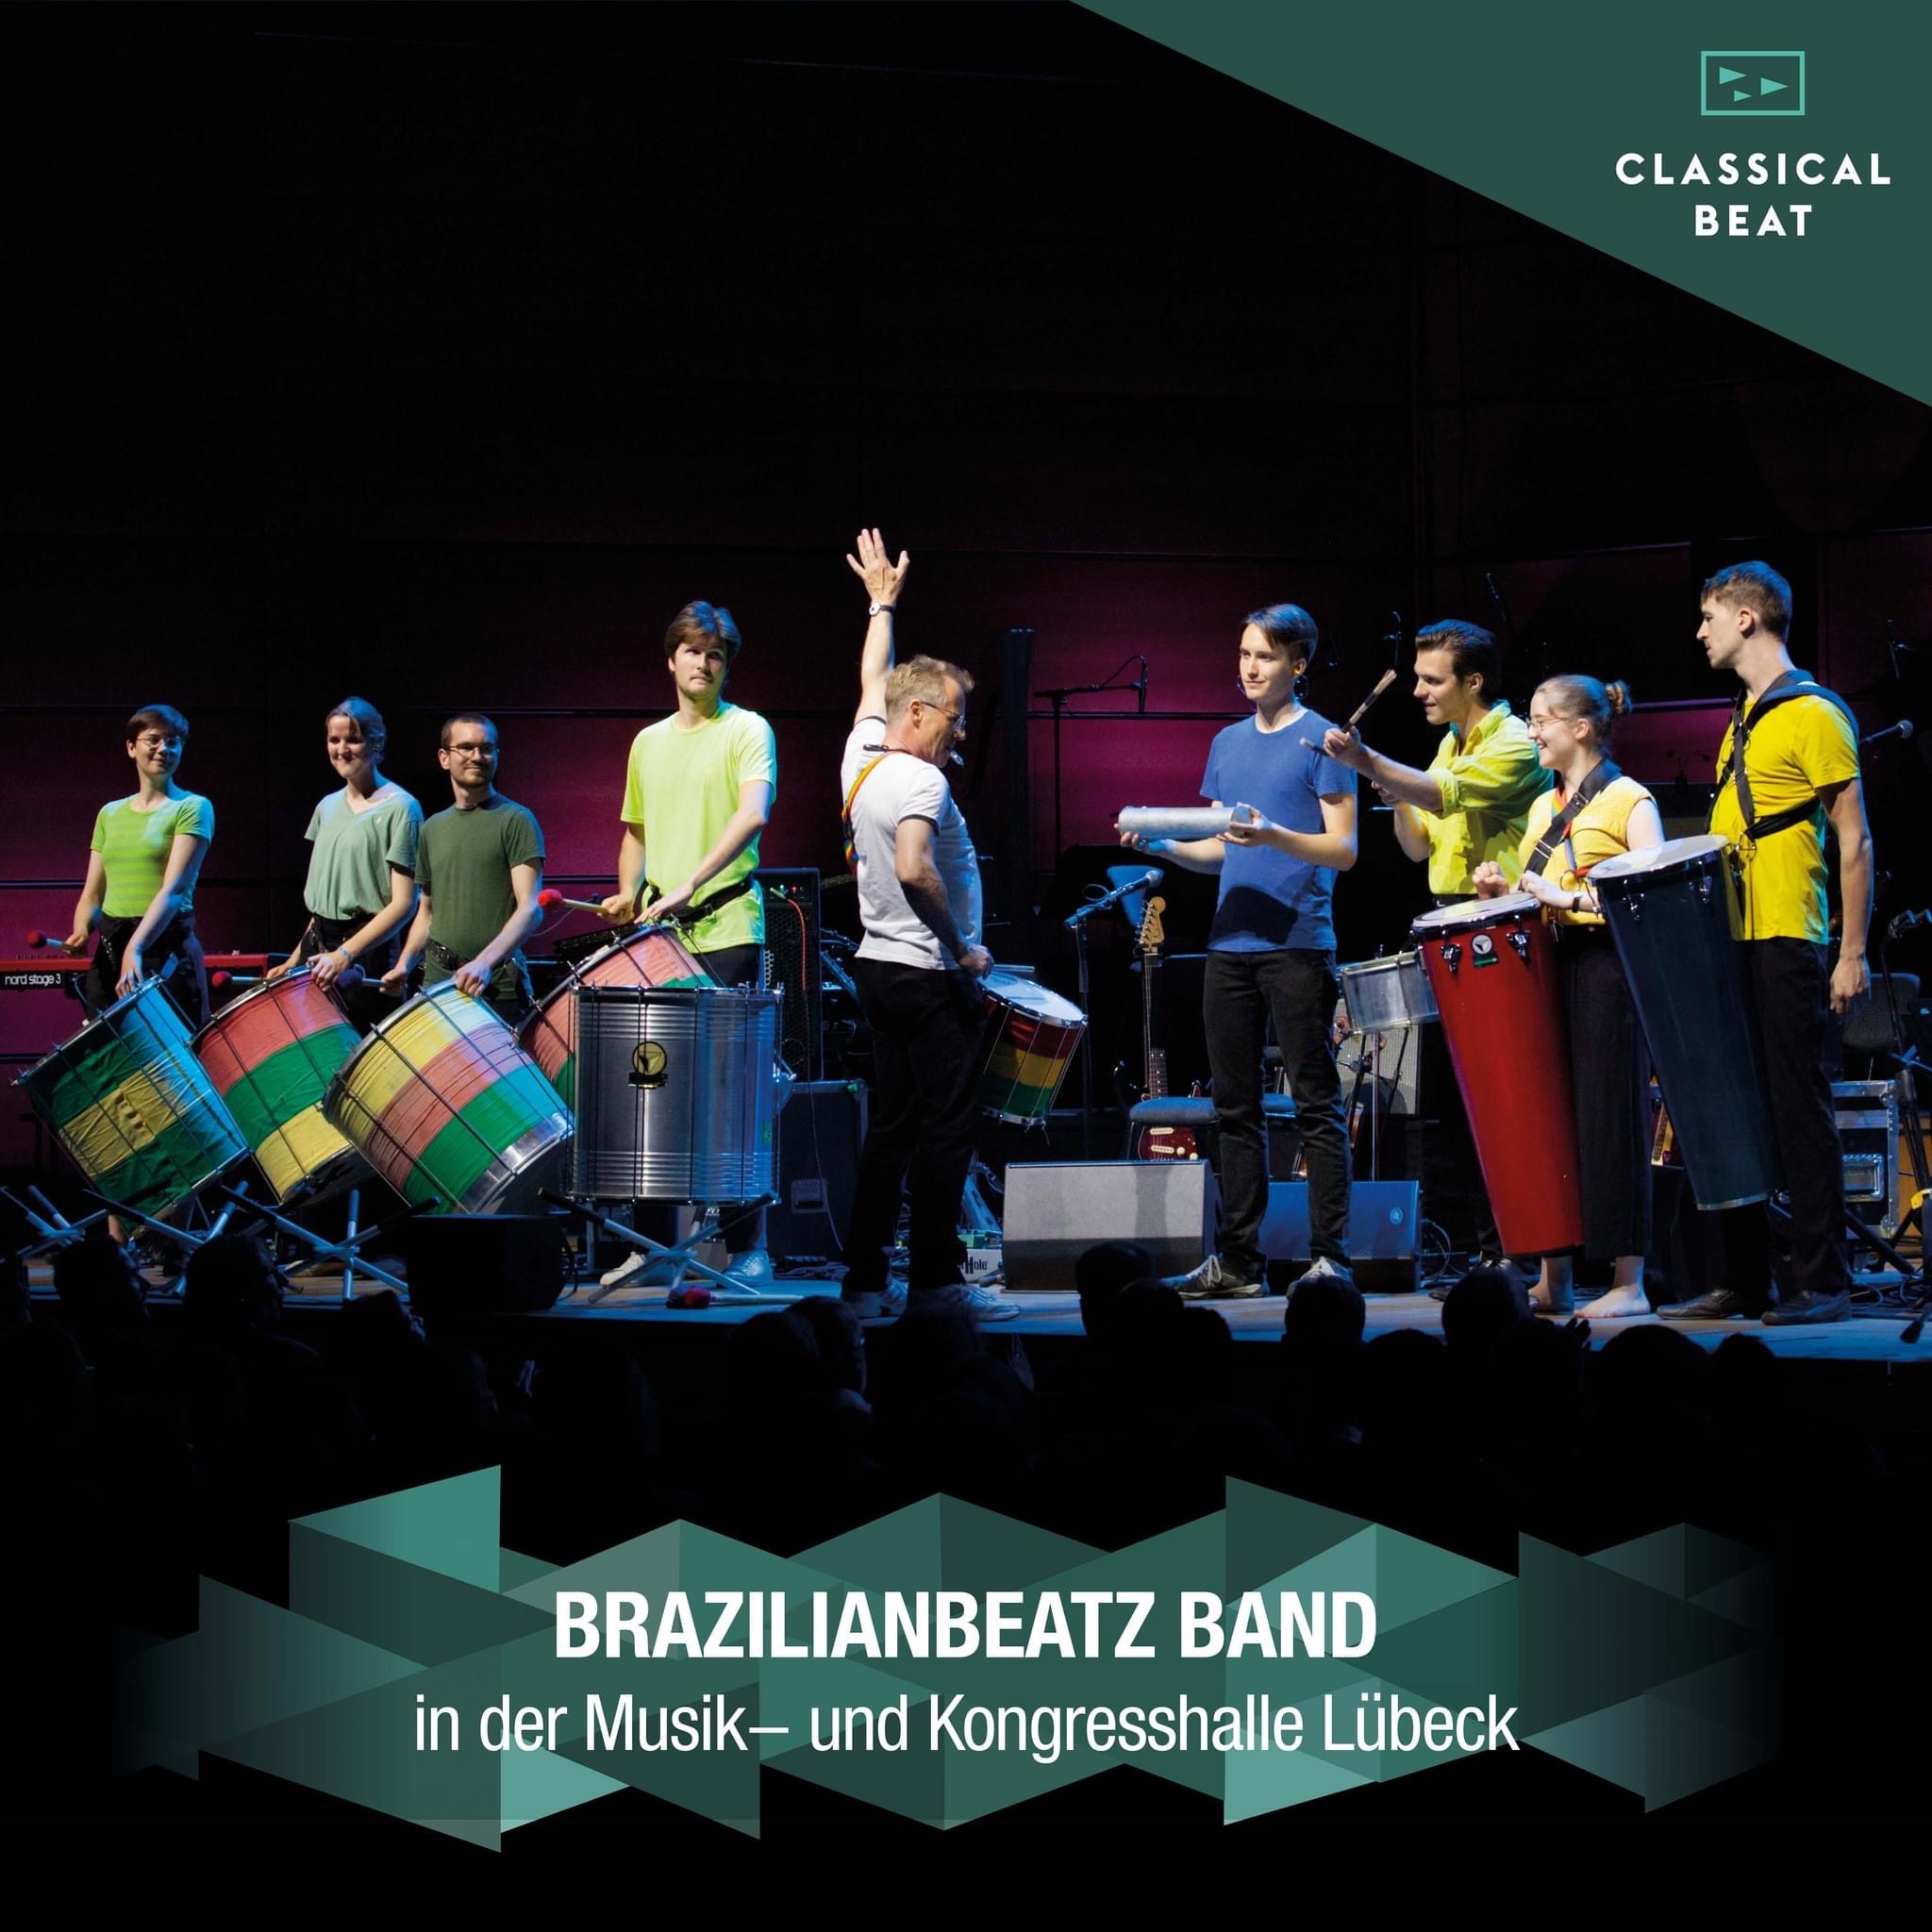 BrazilianBeatz mit "Funky-Samba" in der Musik- und Kongresshalle Lübeck am 21. Juli 2022 
(im Bild ist nur eine Teilbesetzung)